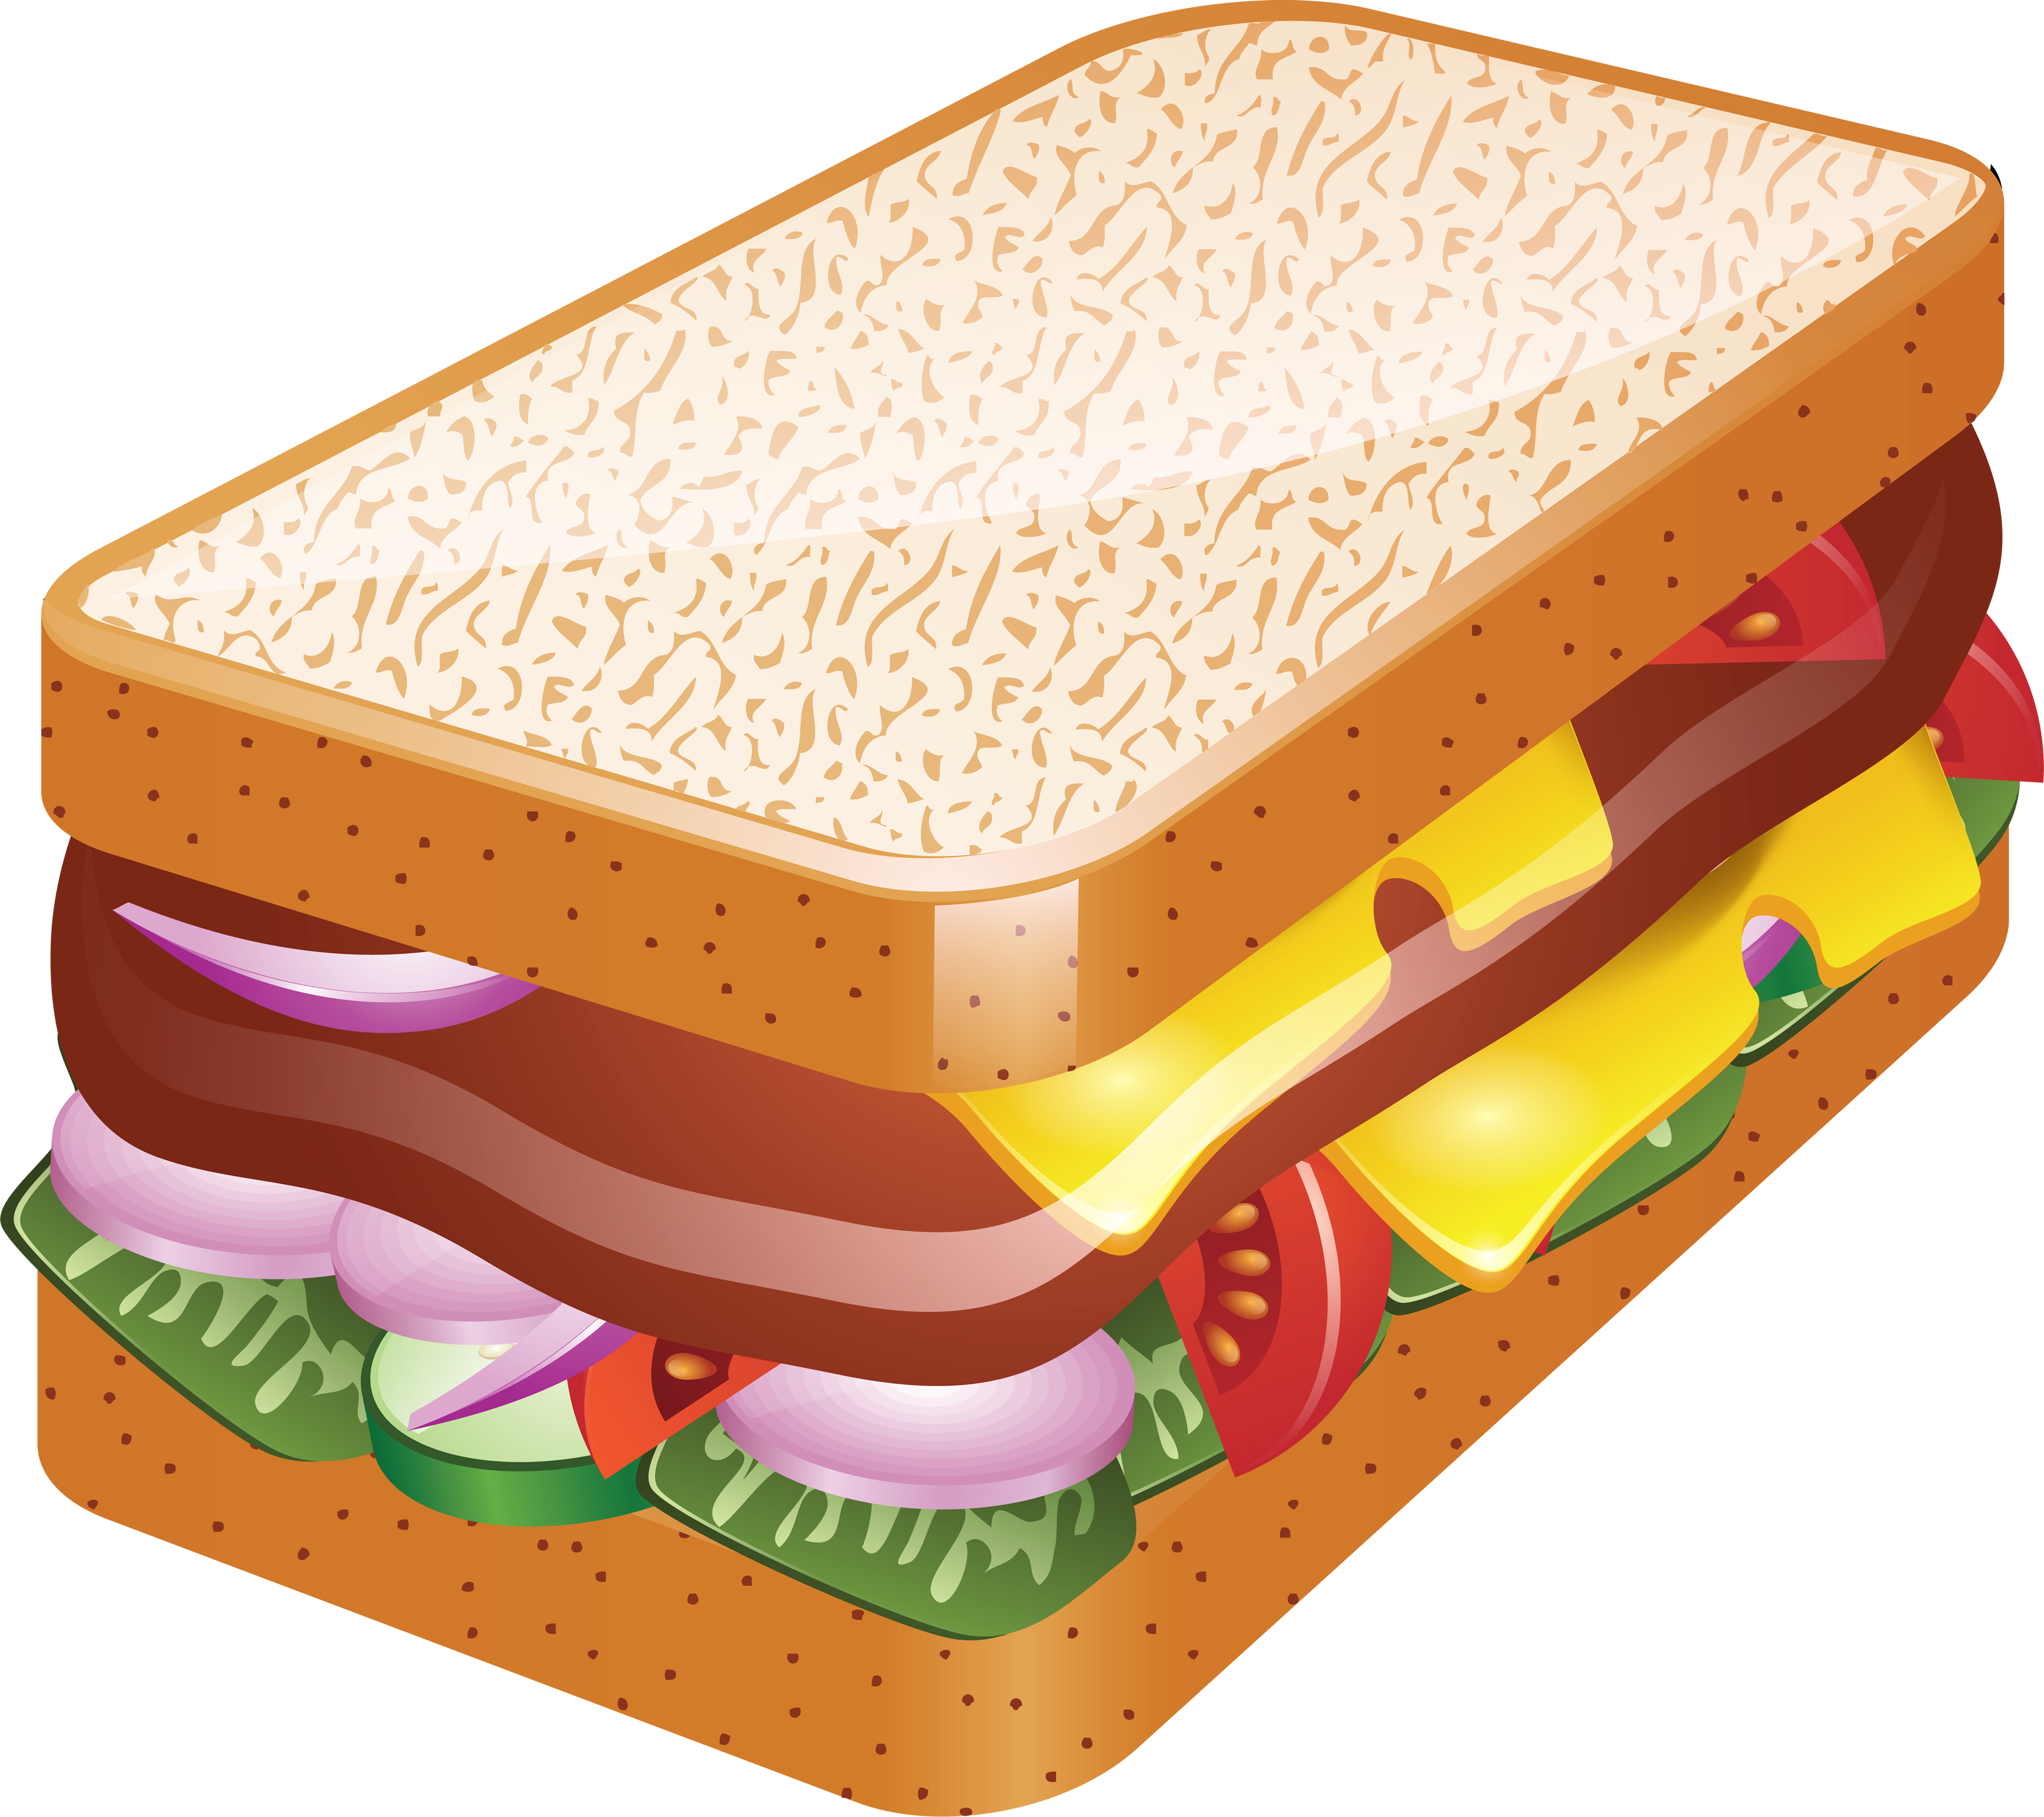 appetizers clipart sandwich